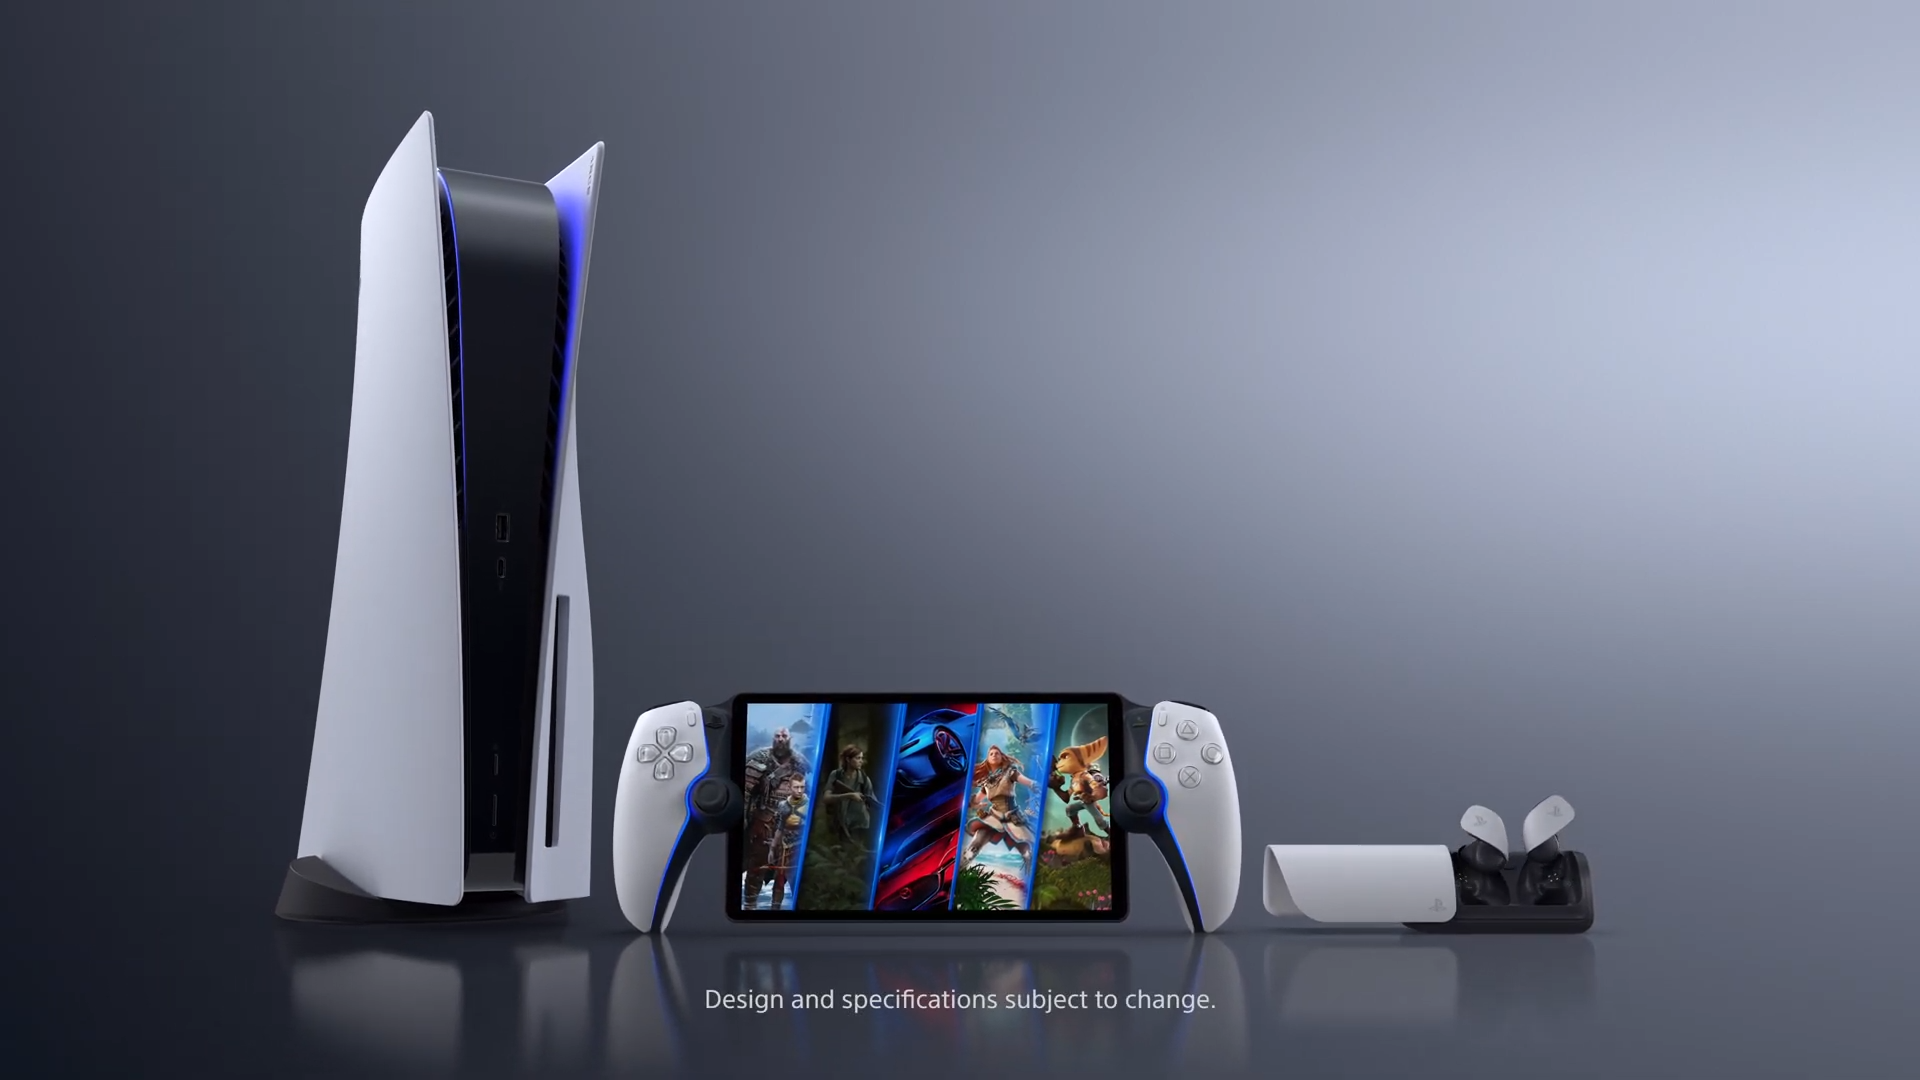 PlayStation Portal possibilita streaming de jogos do PS5 sem uso de  televisão - Tecnologia e Games - Folha PE